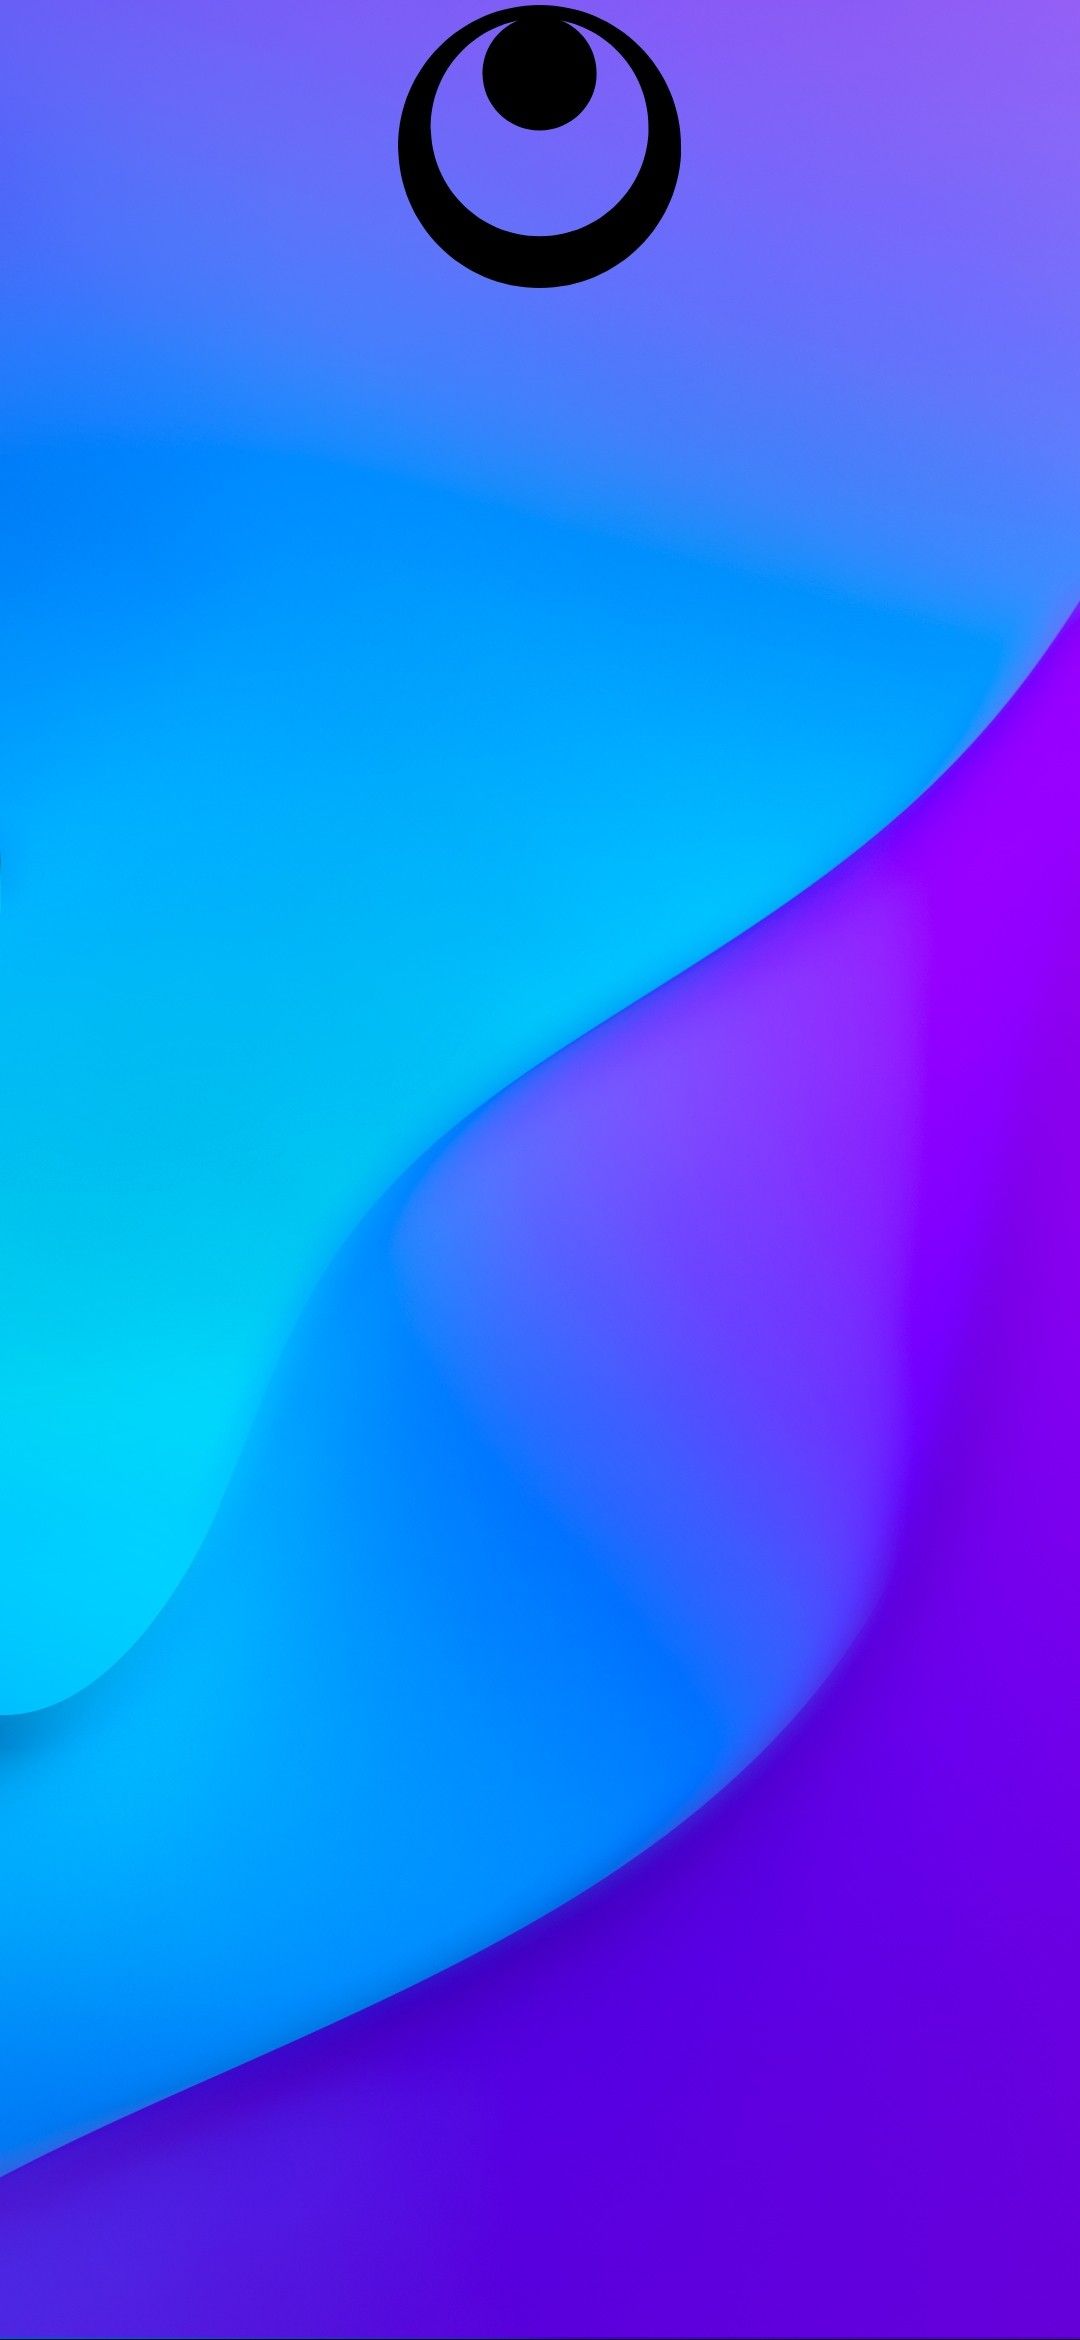 descargar fondo de pantalla barcelona untuk hp,azul,violeta,púrpura,agua,azul cobalto